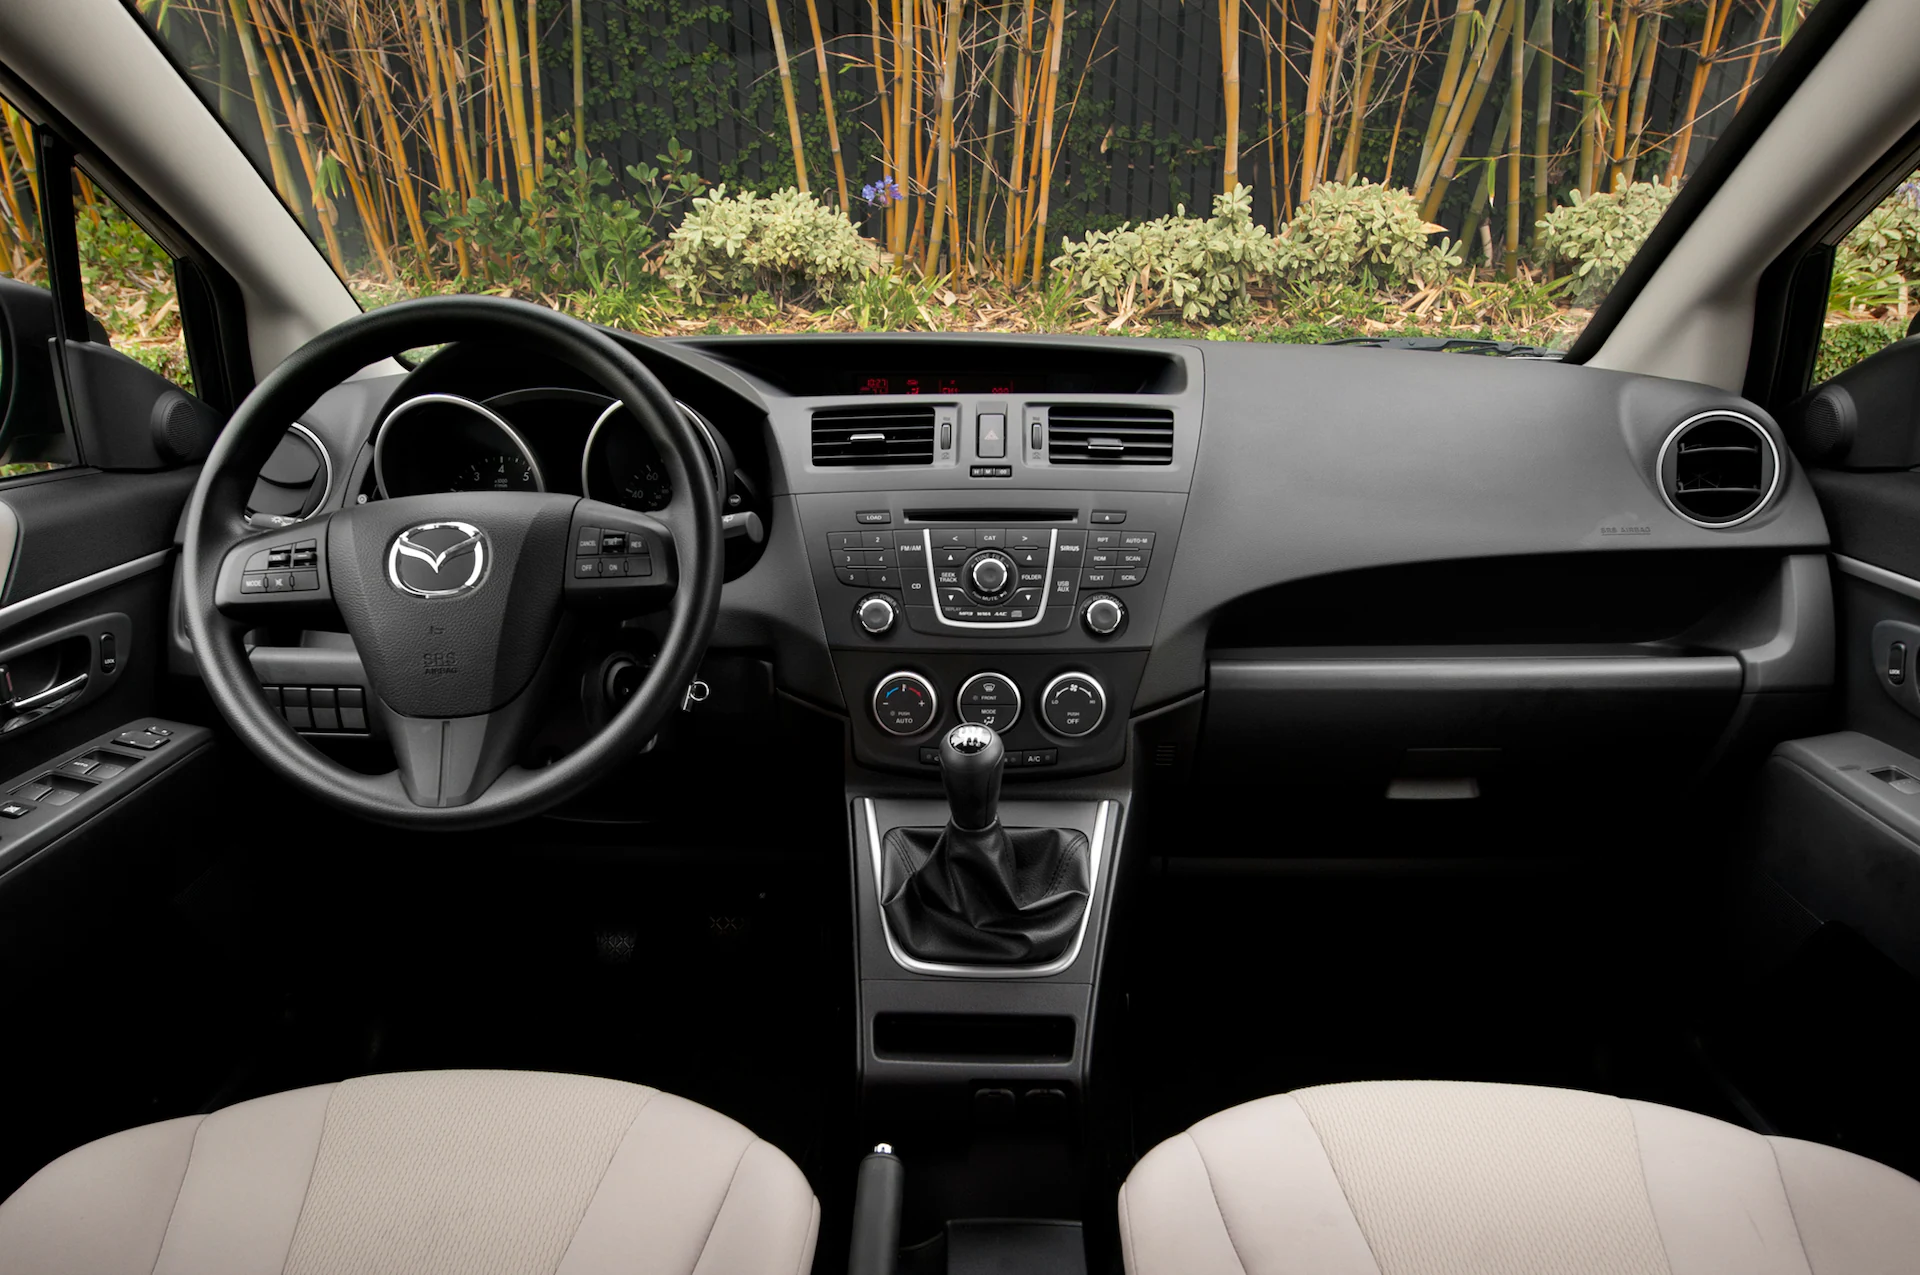 Mazda Premacy interior - Cockpit